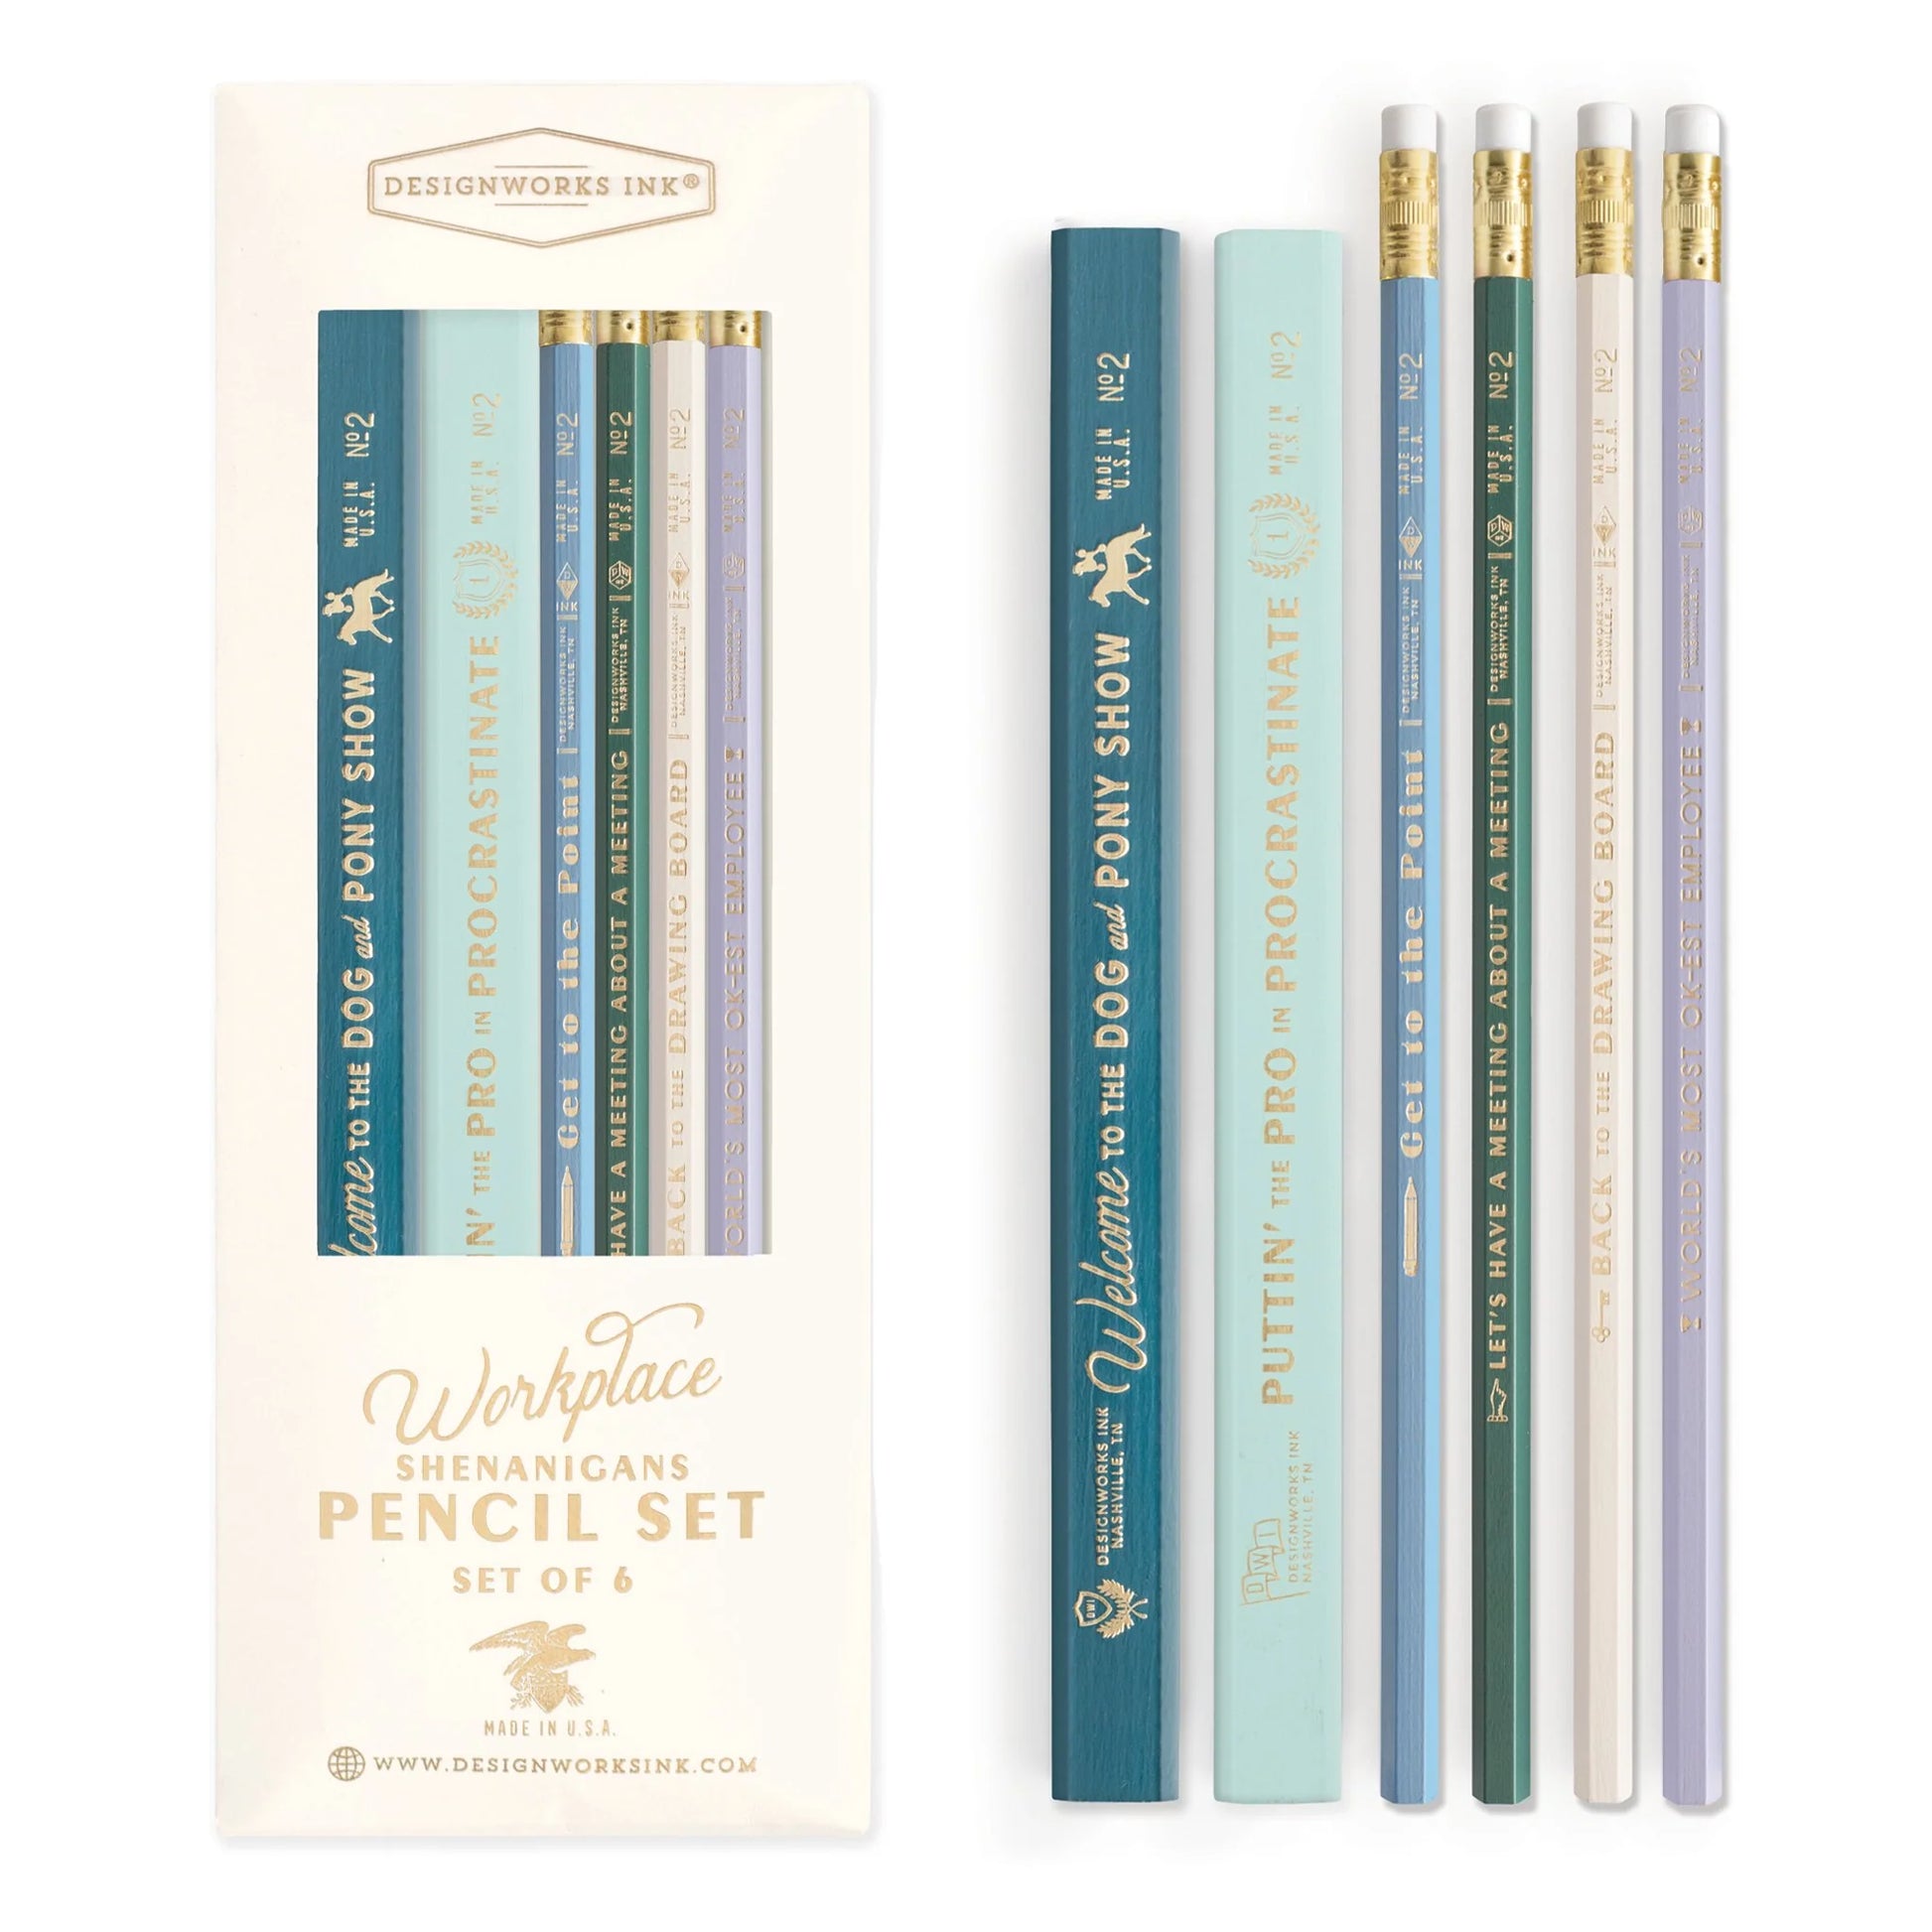 Designworks inc pencil sets of 6 